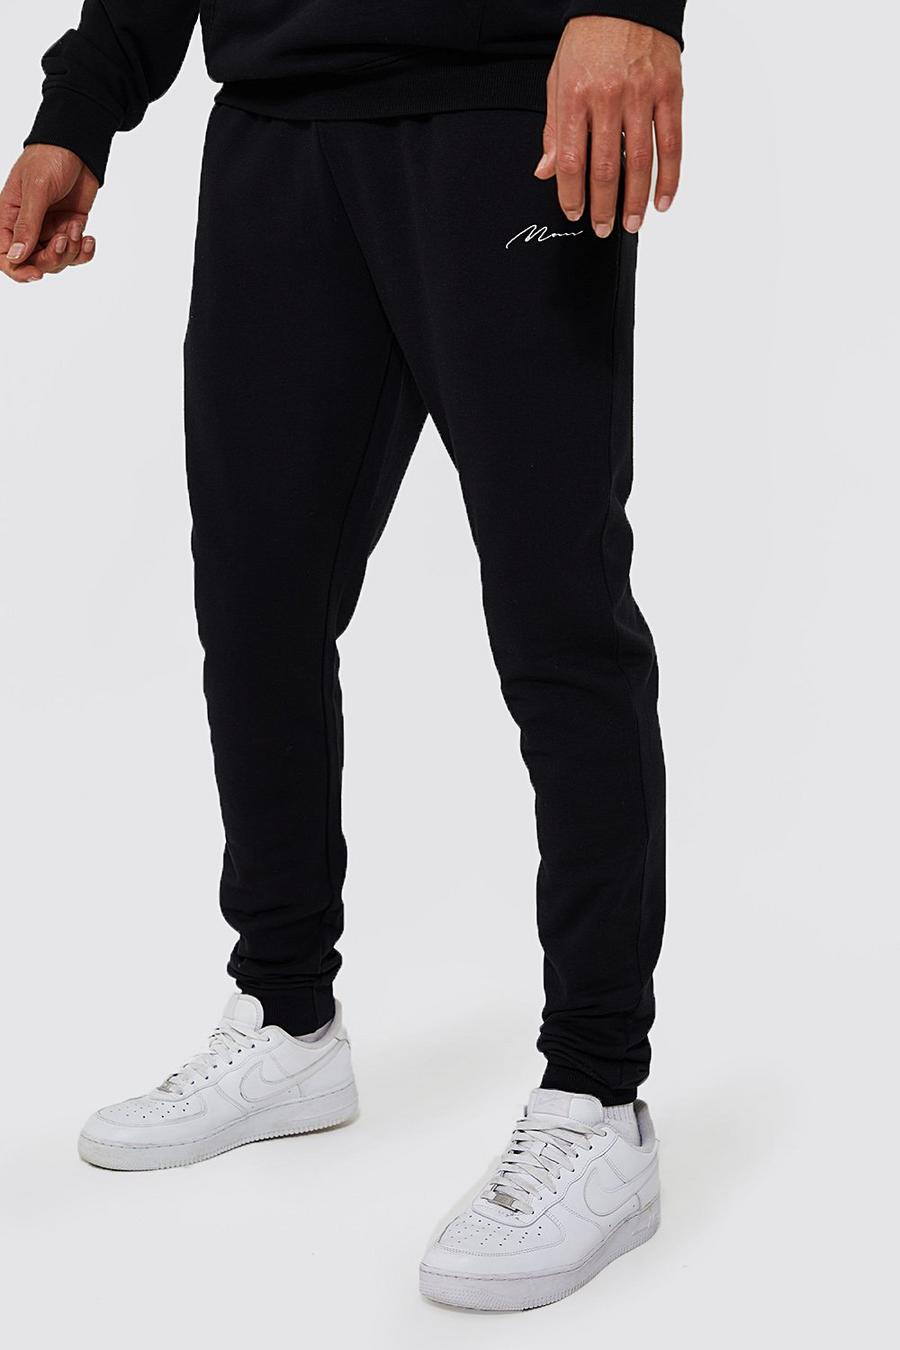 Pantalón deportivo Tall pitillo de tela jersey con algodón ecológico, Black nero